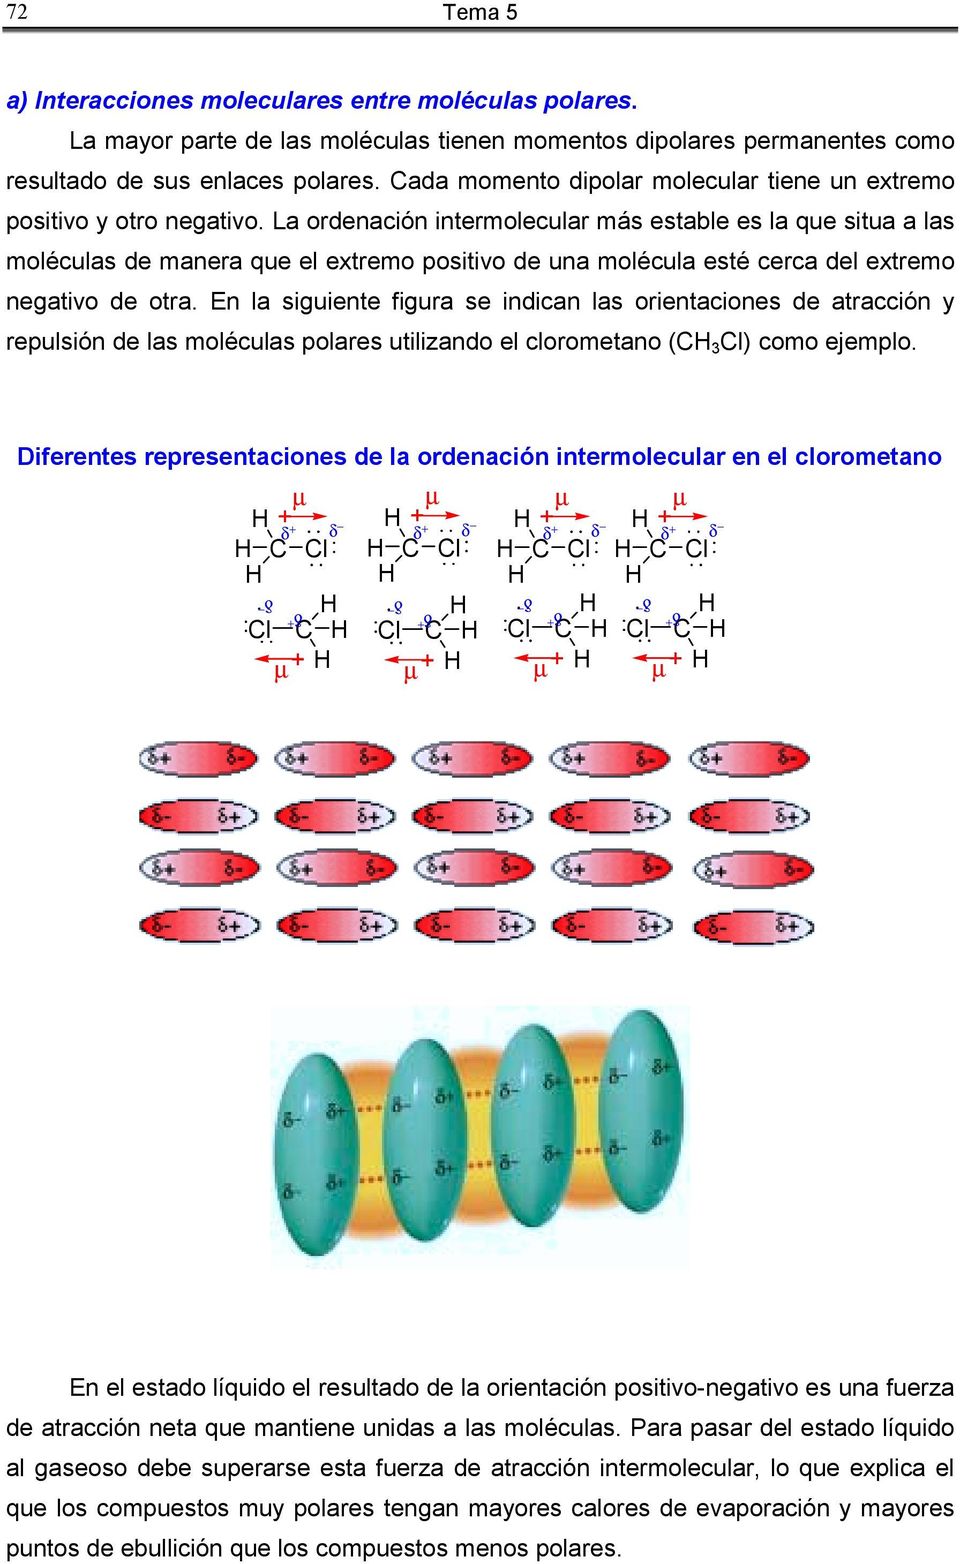 La ordenación intermolecular más estable es la que situa a las moléculas de manera que el extremo positivo de una molécula esté cerca del extremo negativo de otra.